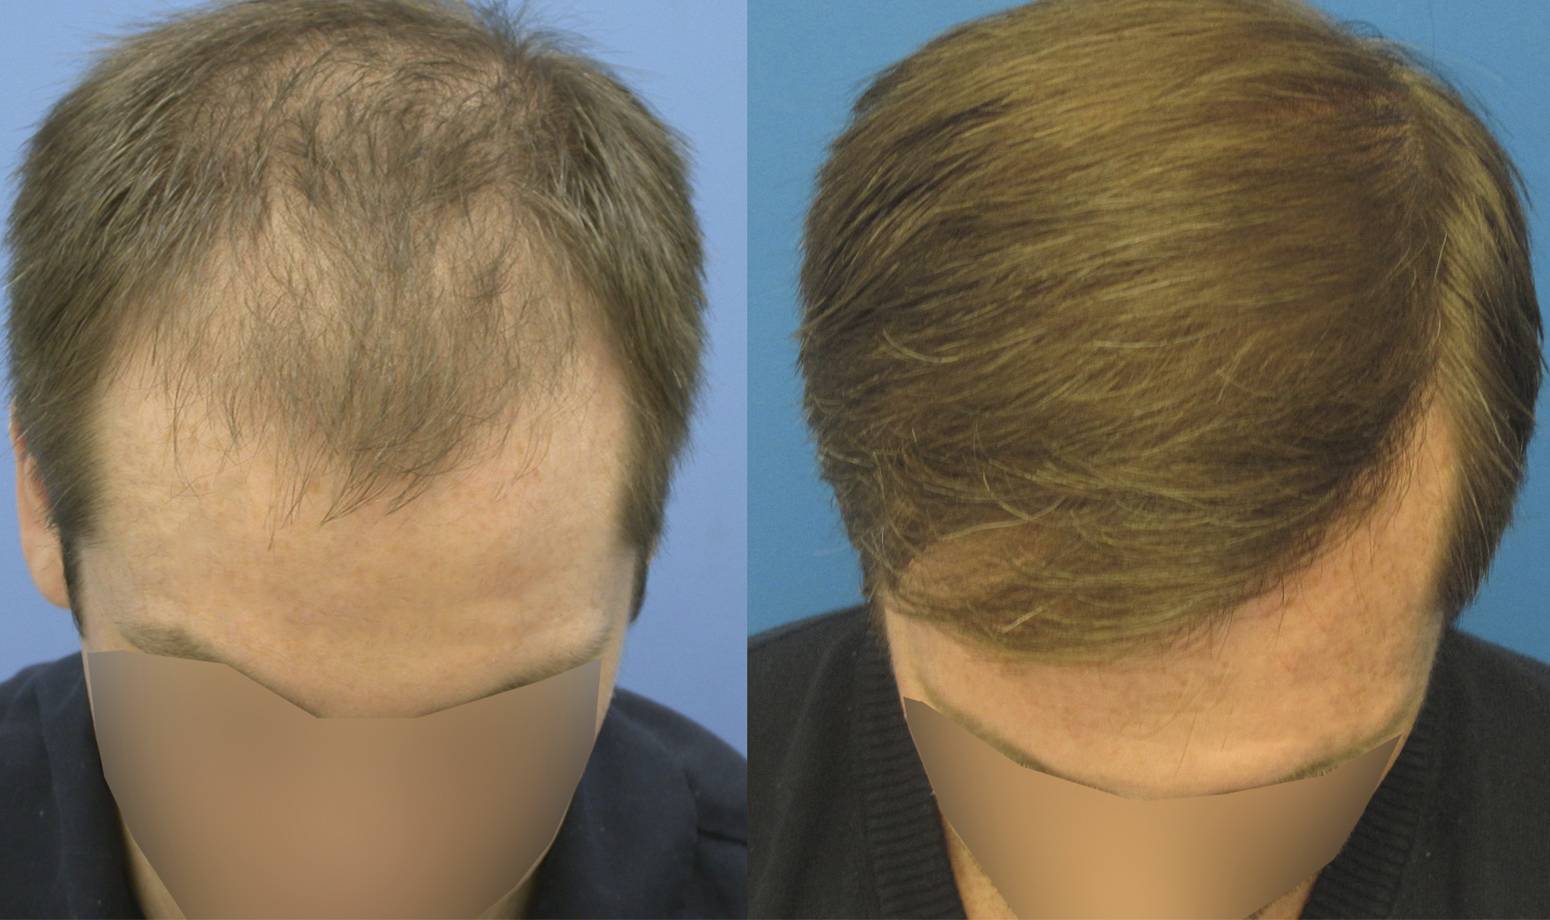 Андрогенное алопеция (облысение у мужчин): причины, симптомы, лечение и профилактика - клиника «доктор волос»